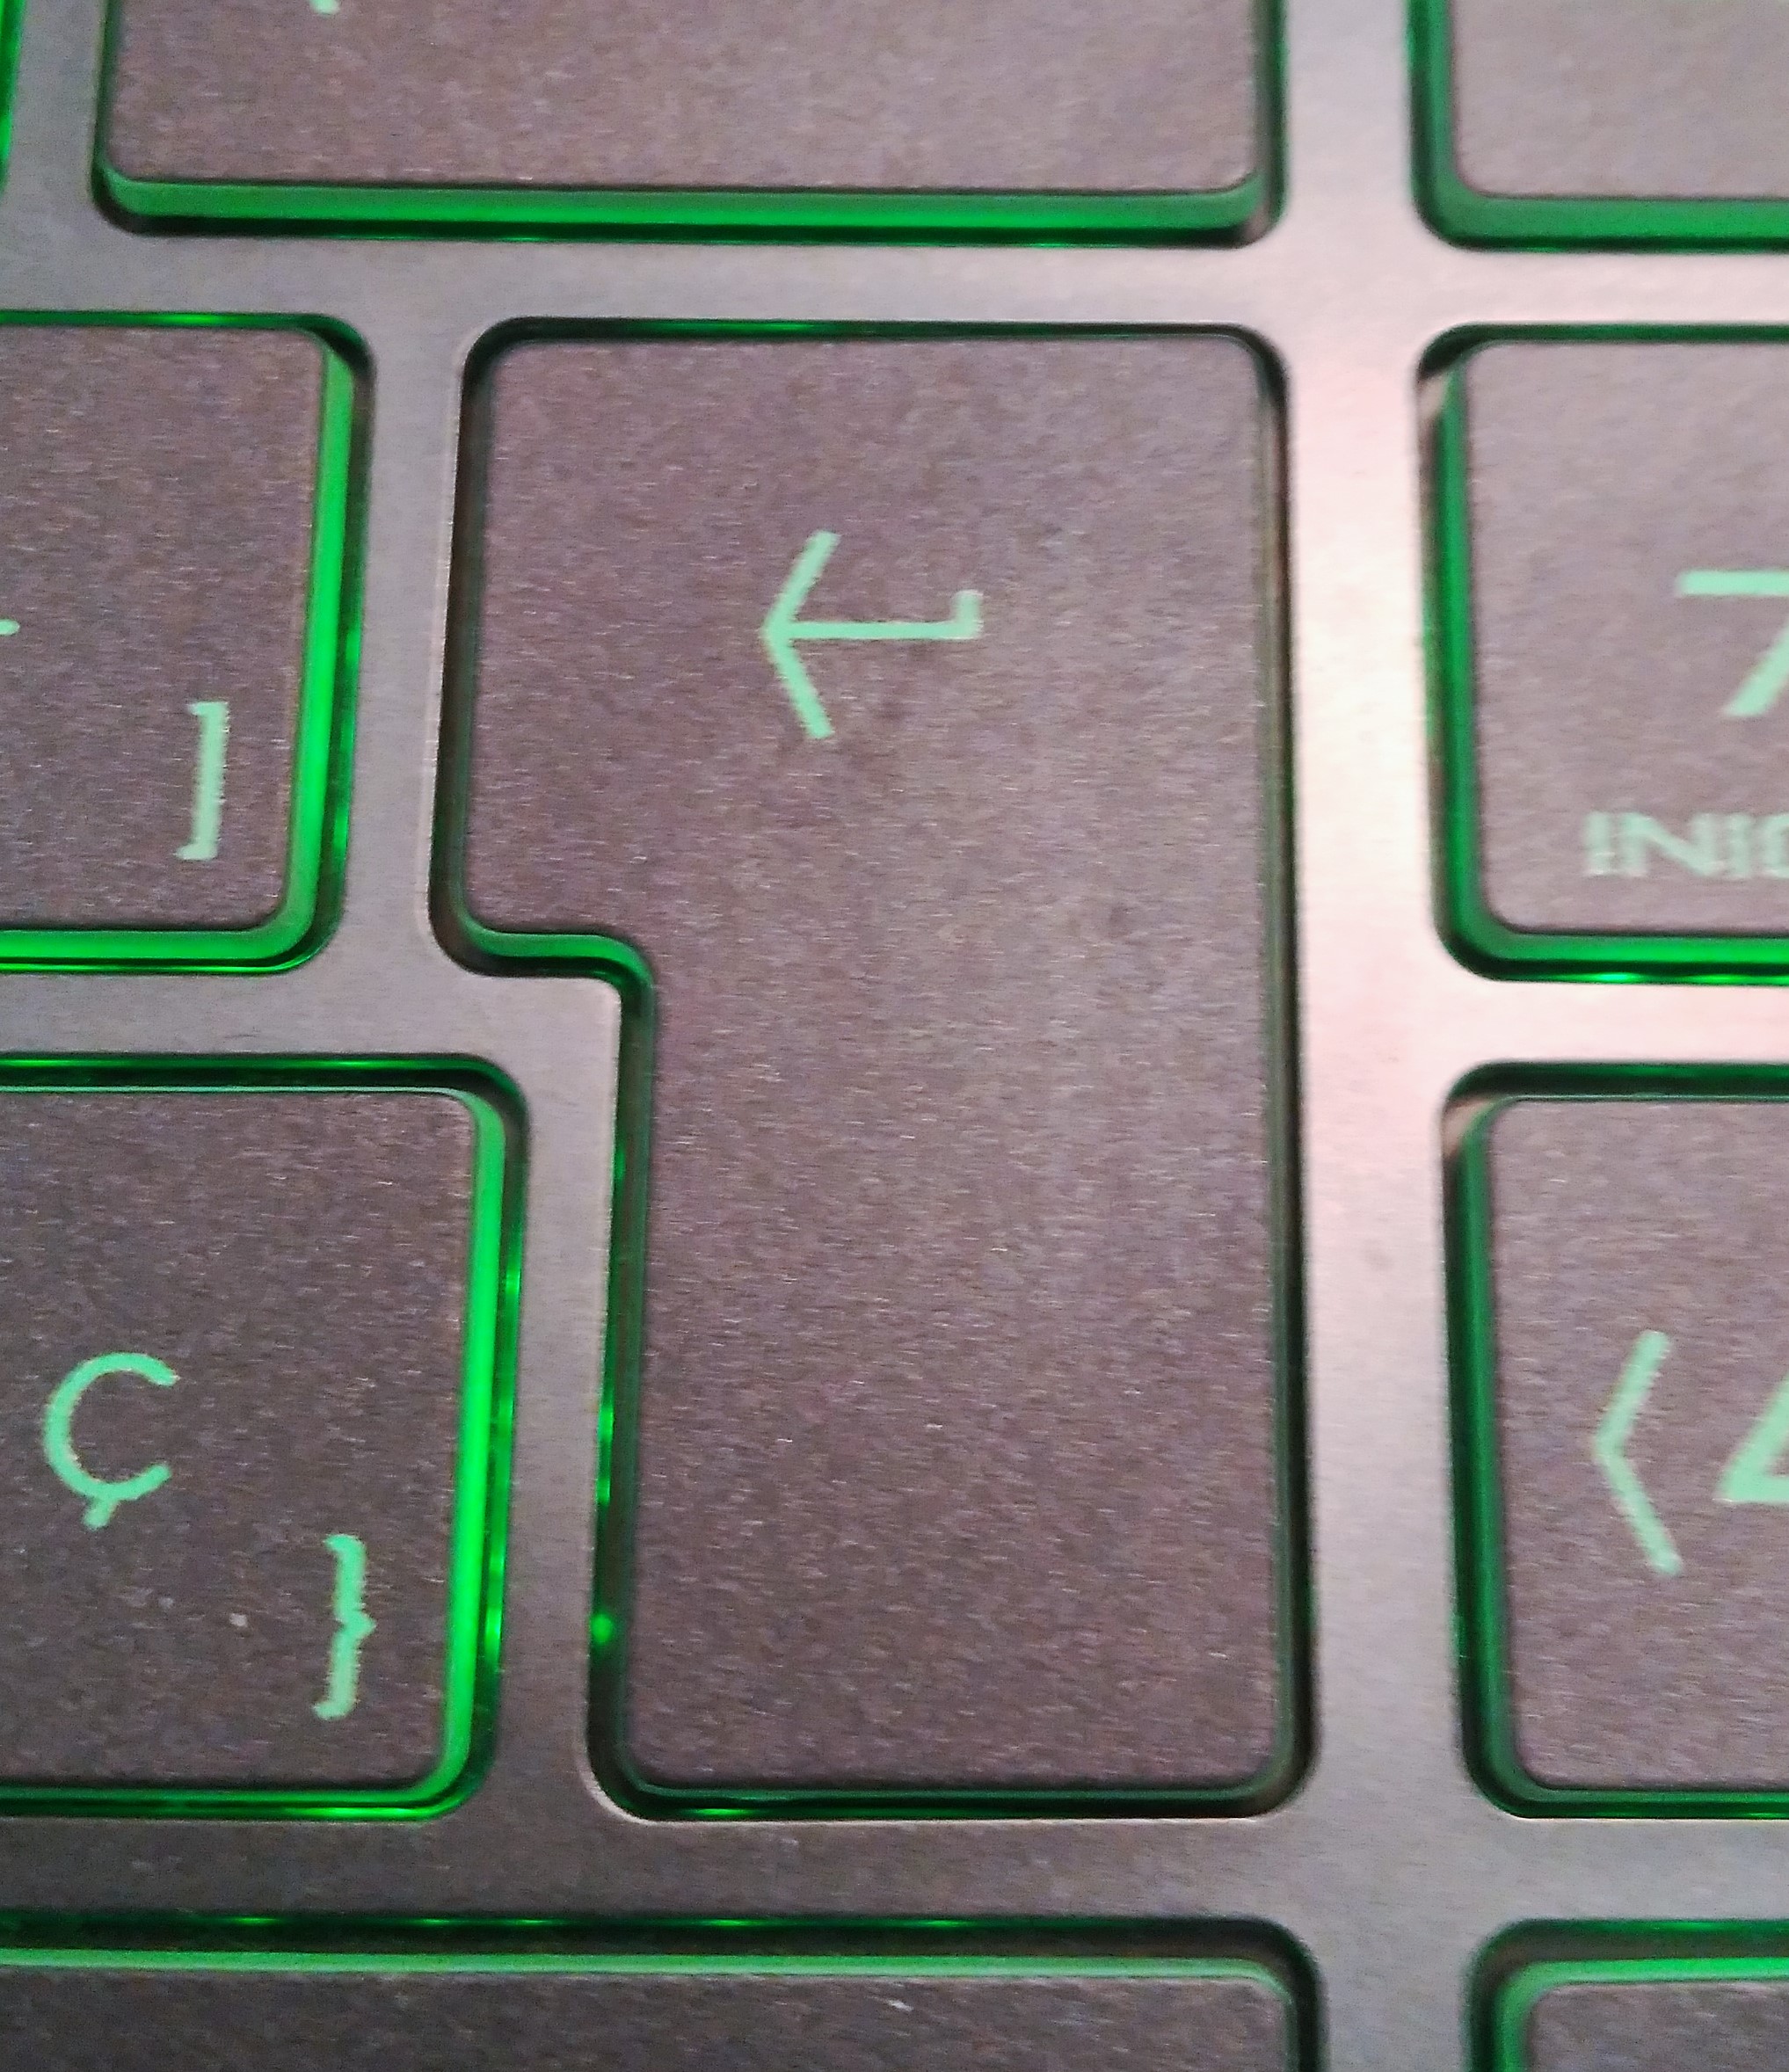 Foto da tecla "enter" do teclado dun ordenador portátil.